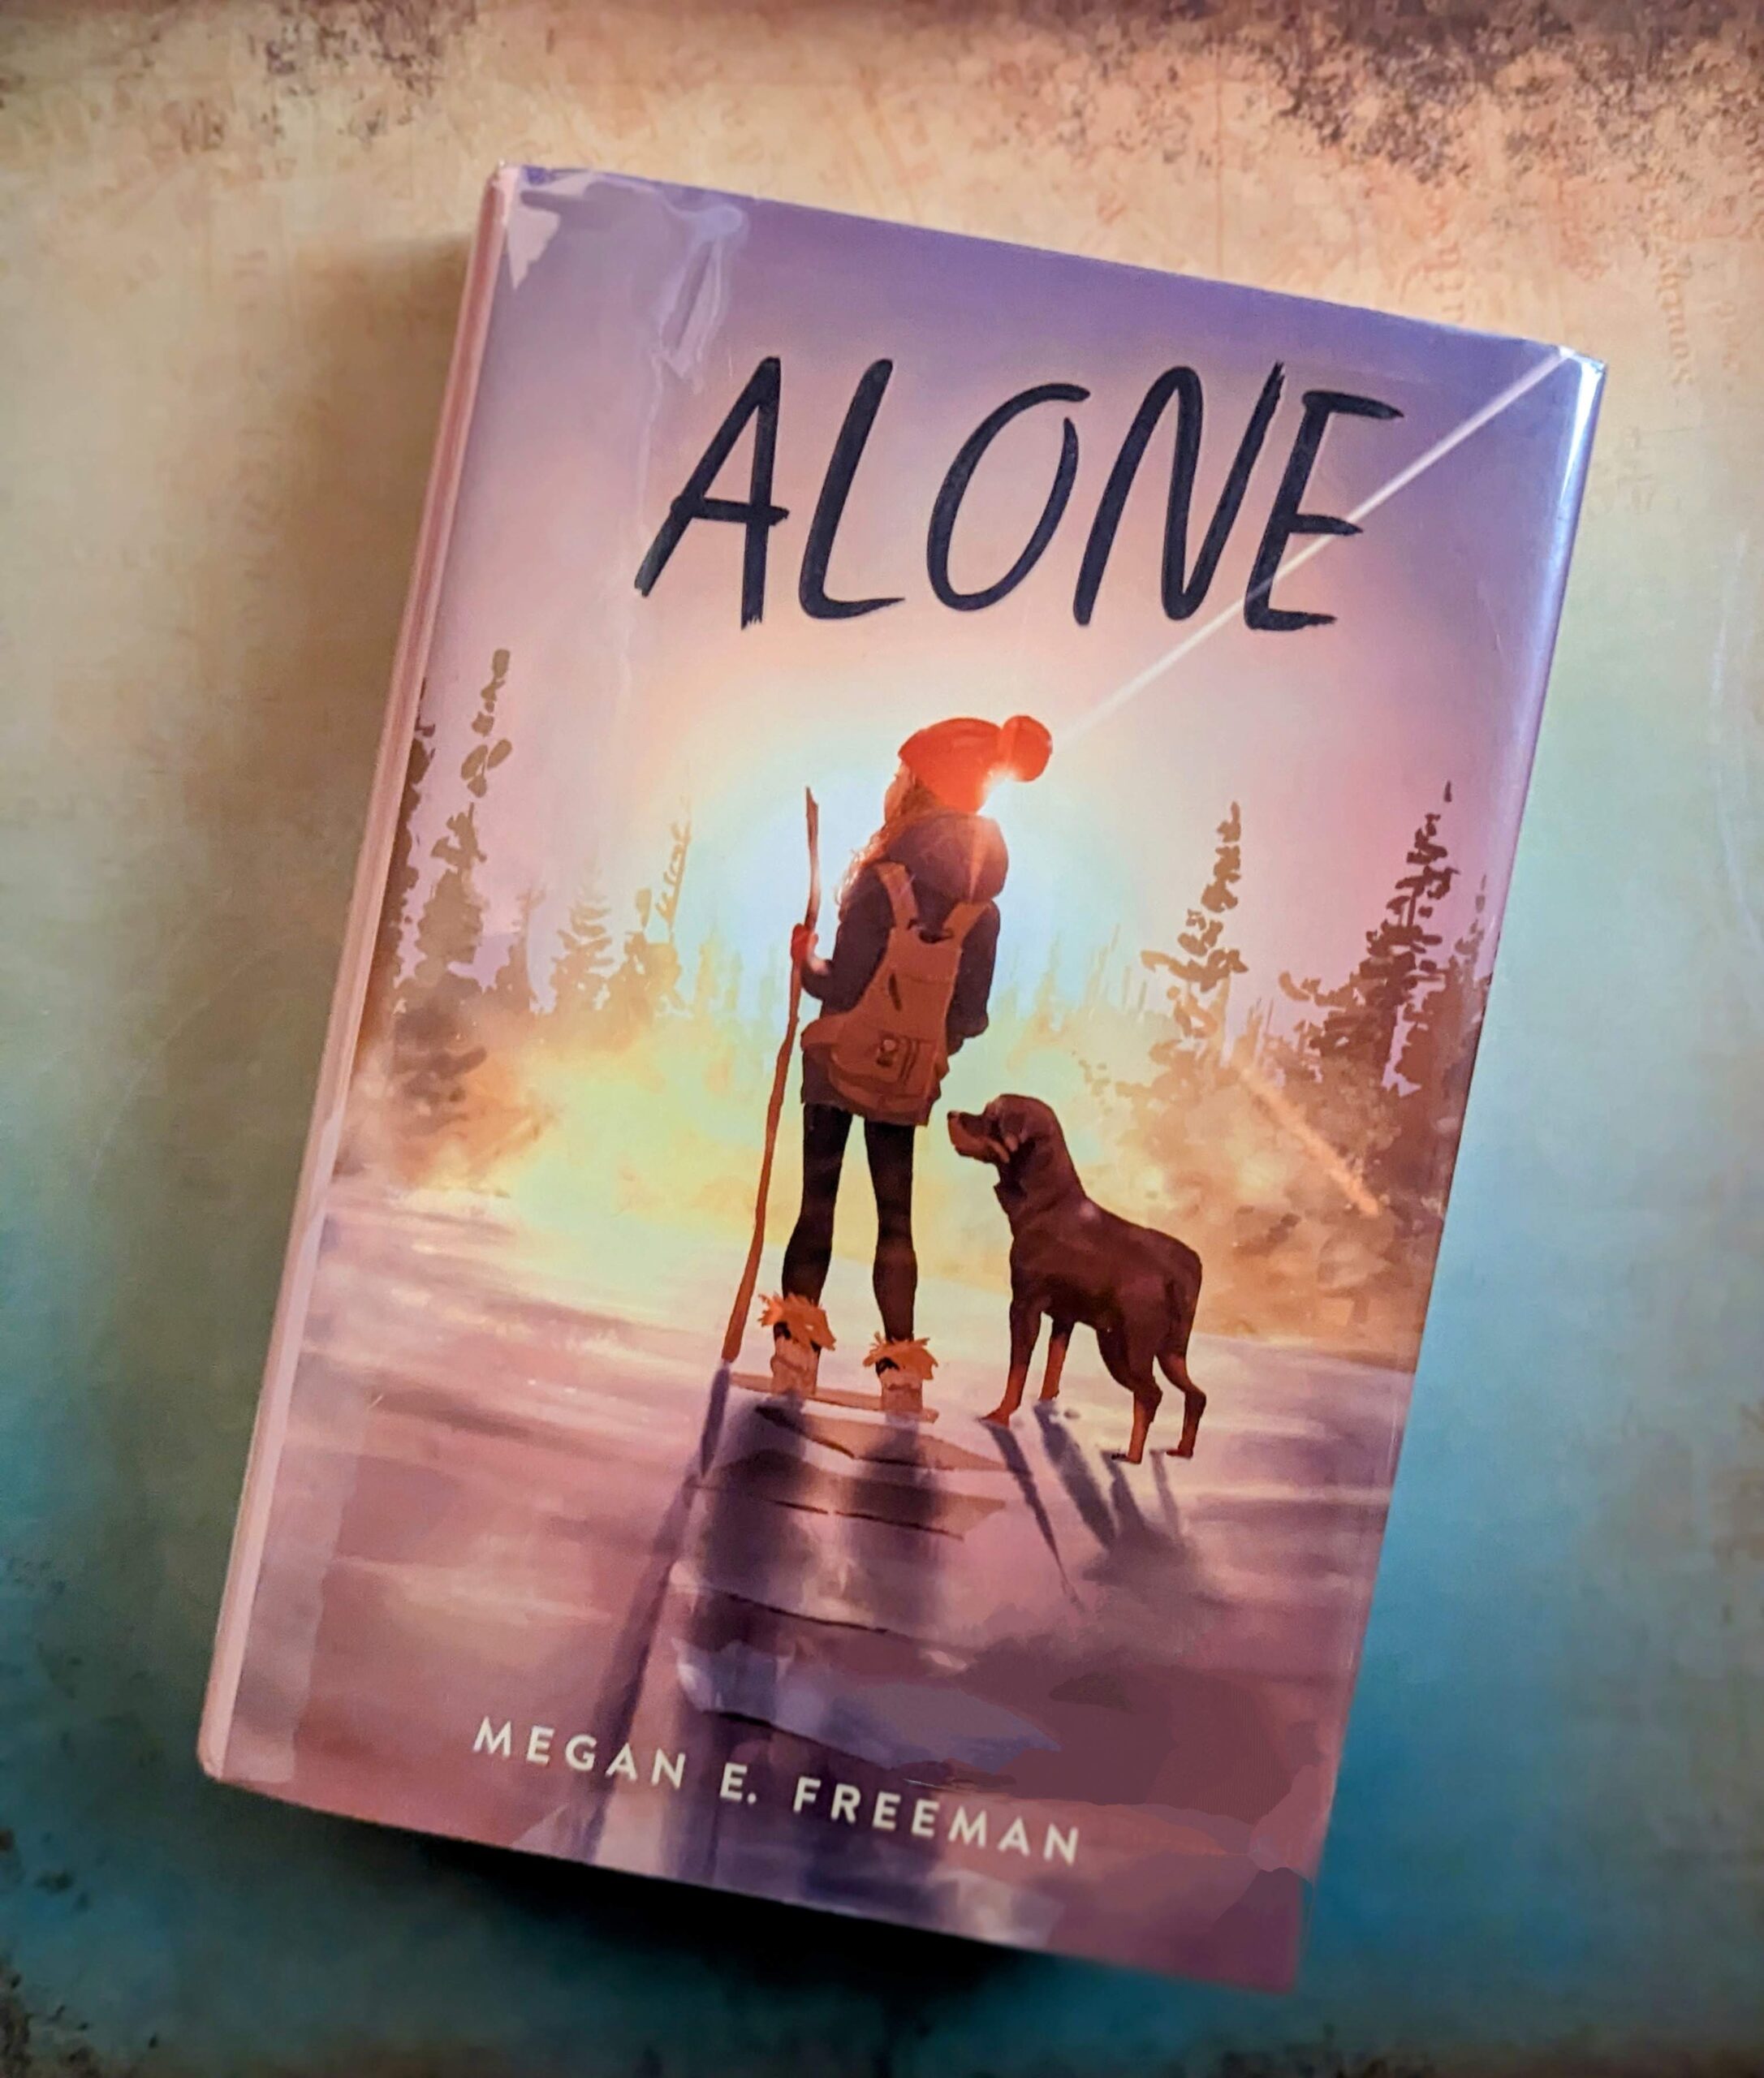 Alone by Megan E. Freeman. A middle grade novel written in verse